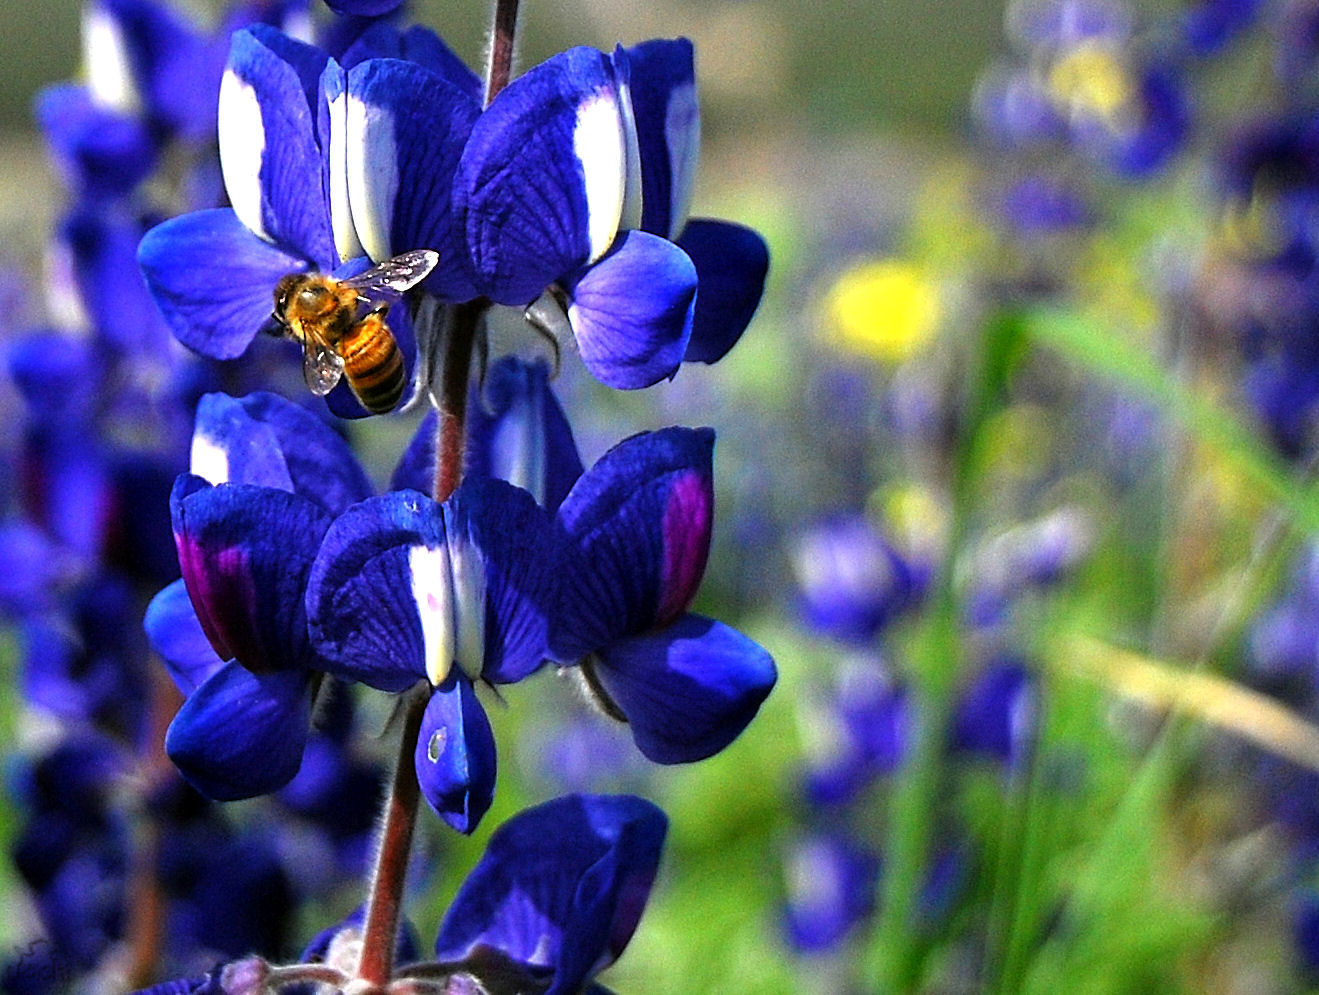 The honeybee loves blue